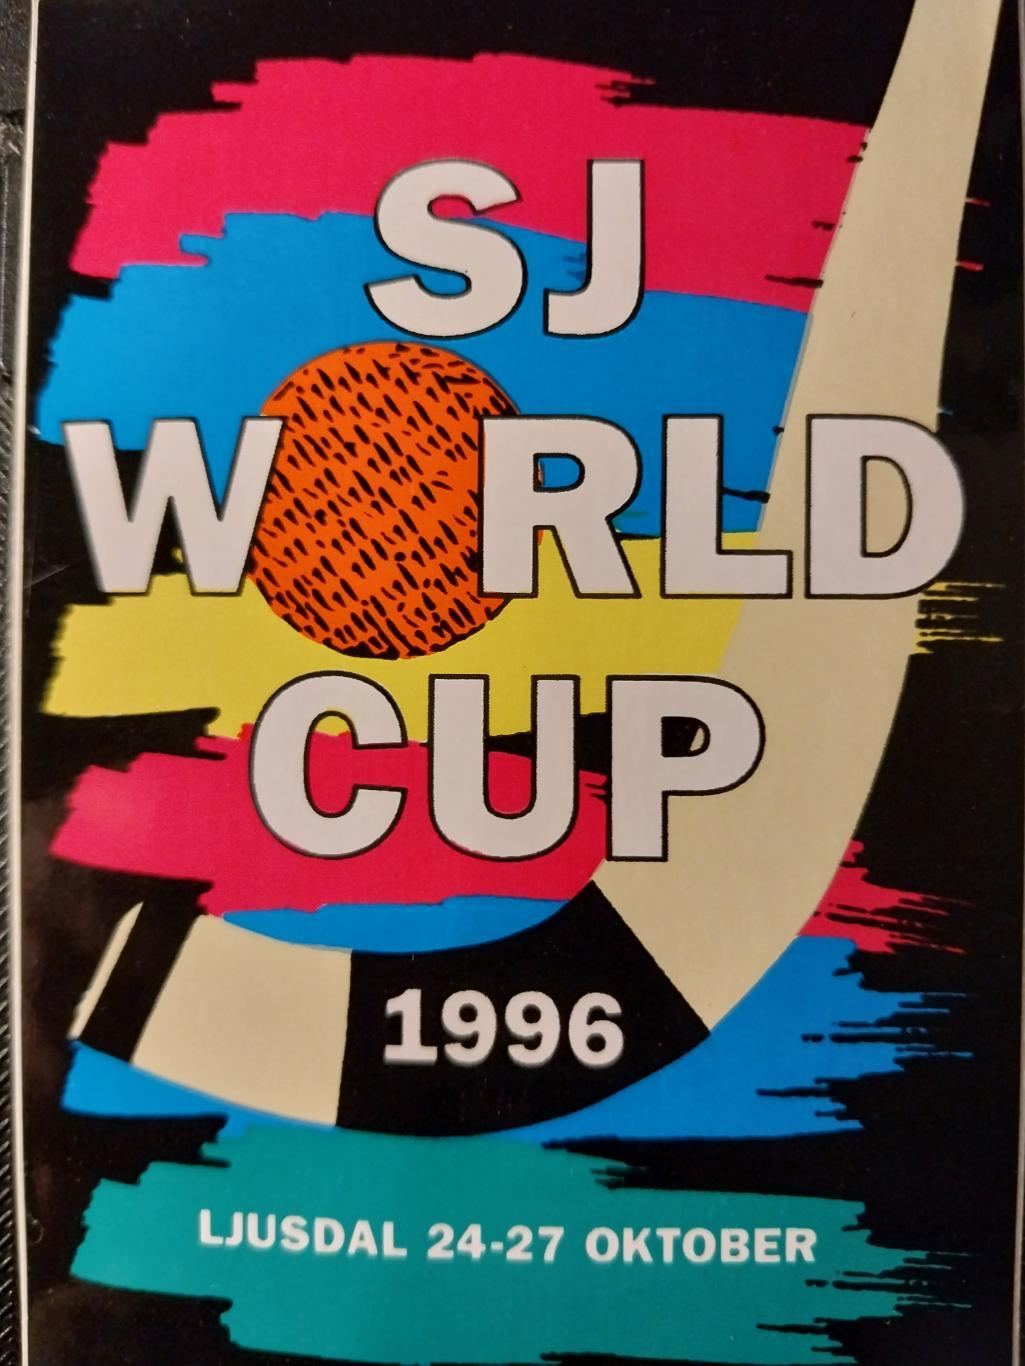 Кубок мира по хоккею с мячом 1996, Юсдаль, Швеция